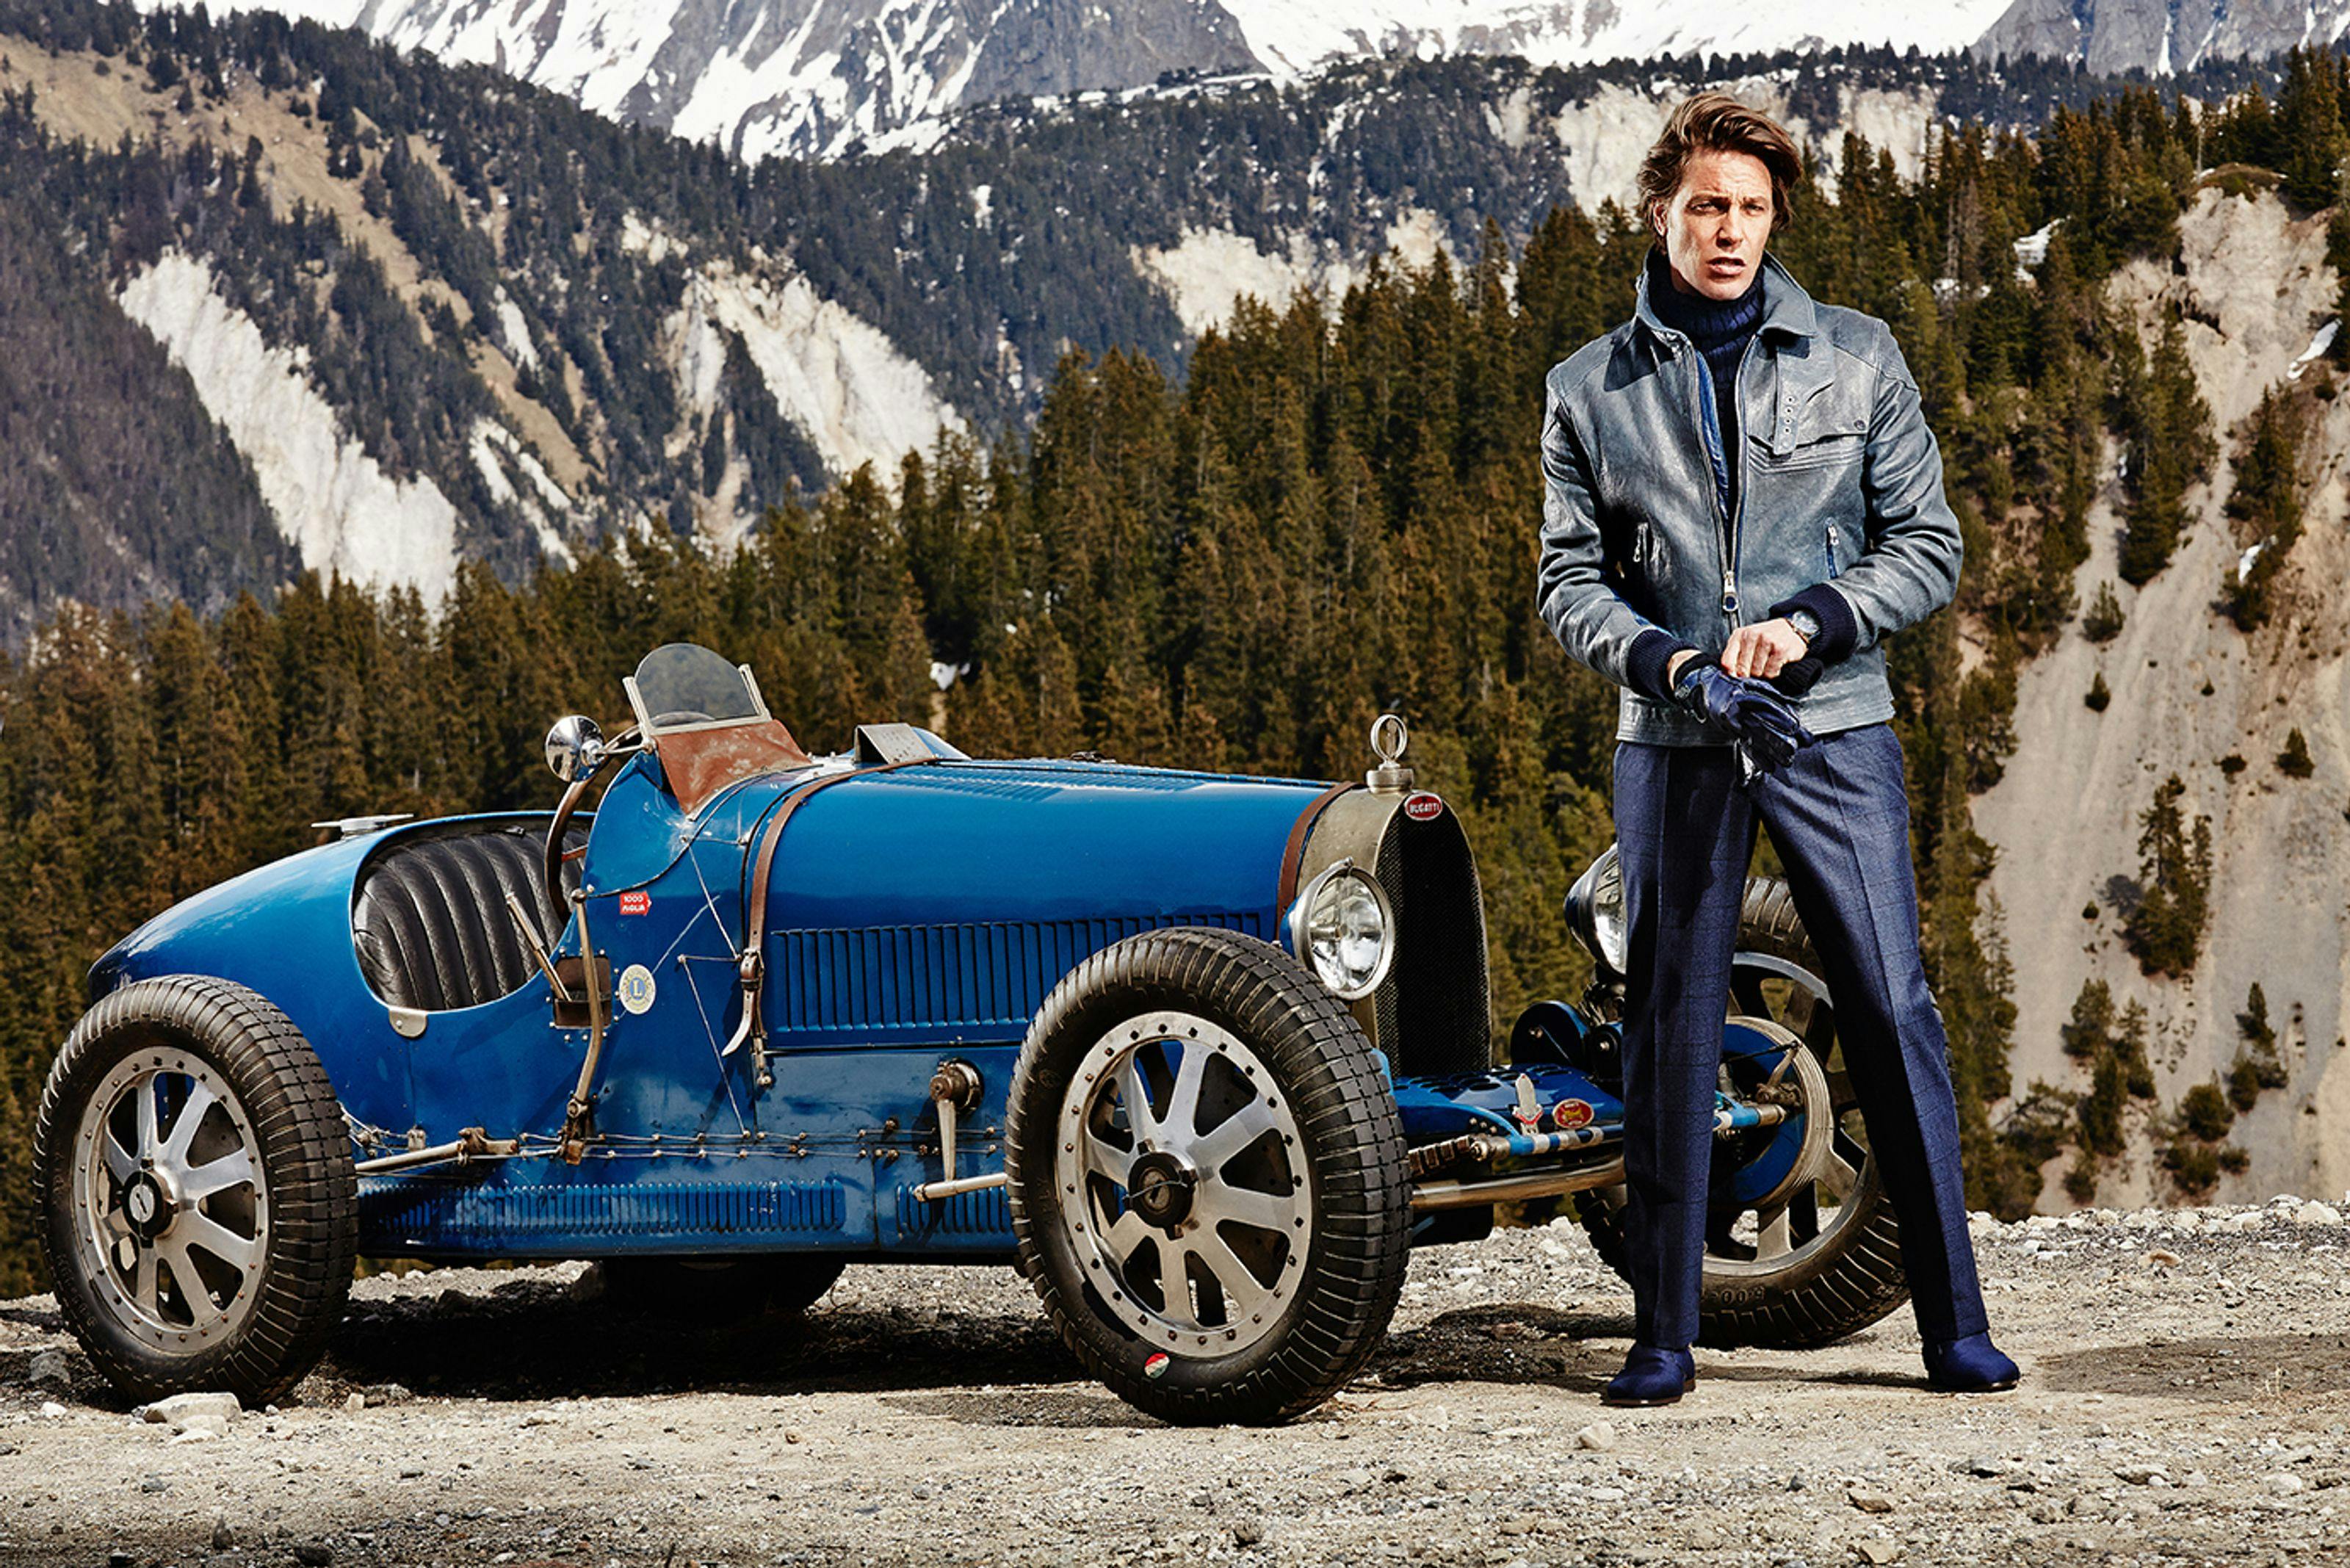 Bugatti présente la nouvelle campagne publicitaire pour sa collection « EB – Ettore Bugatti » 2014/15